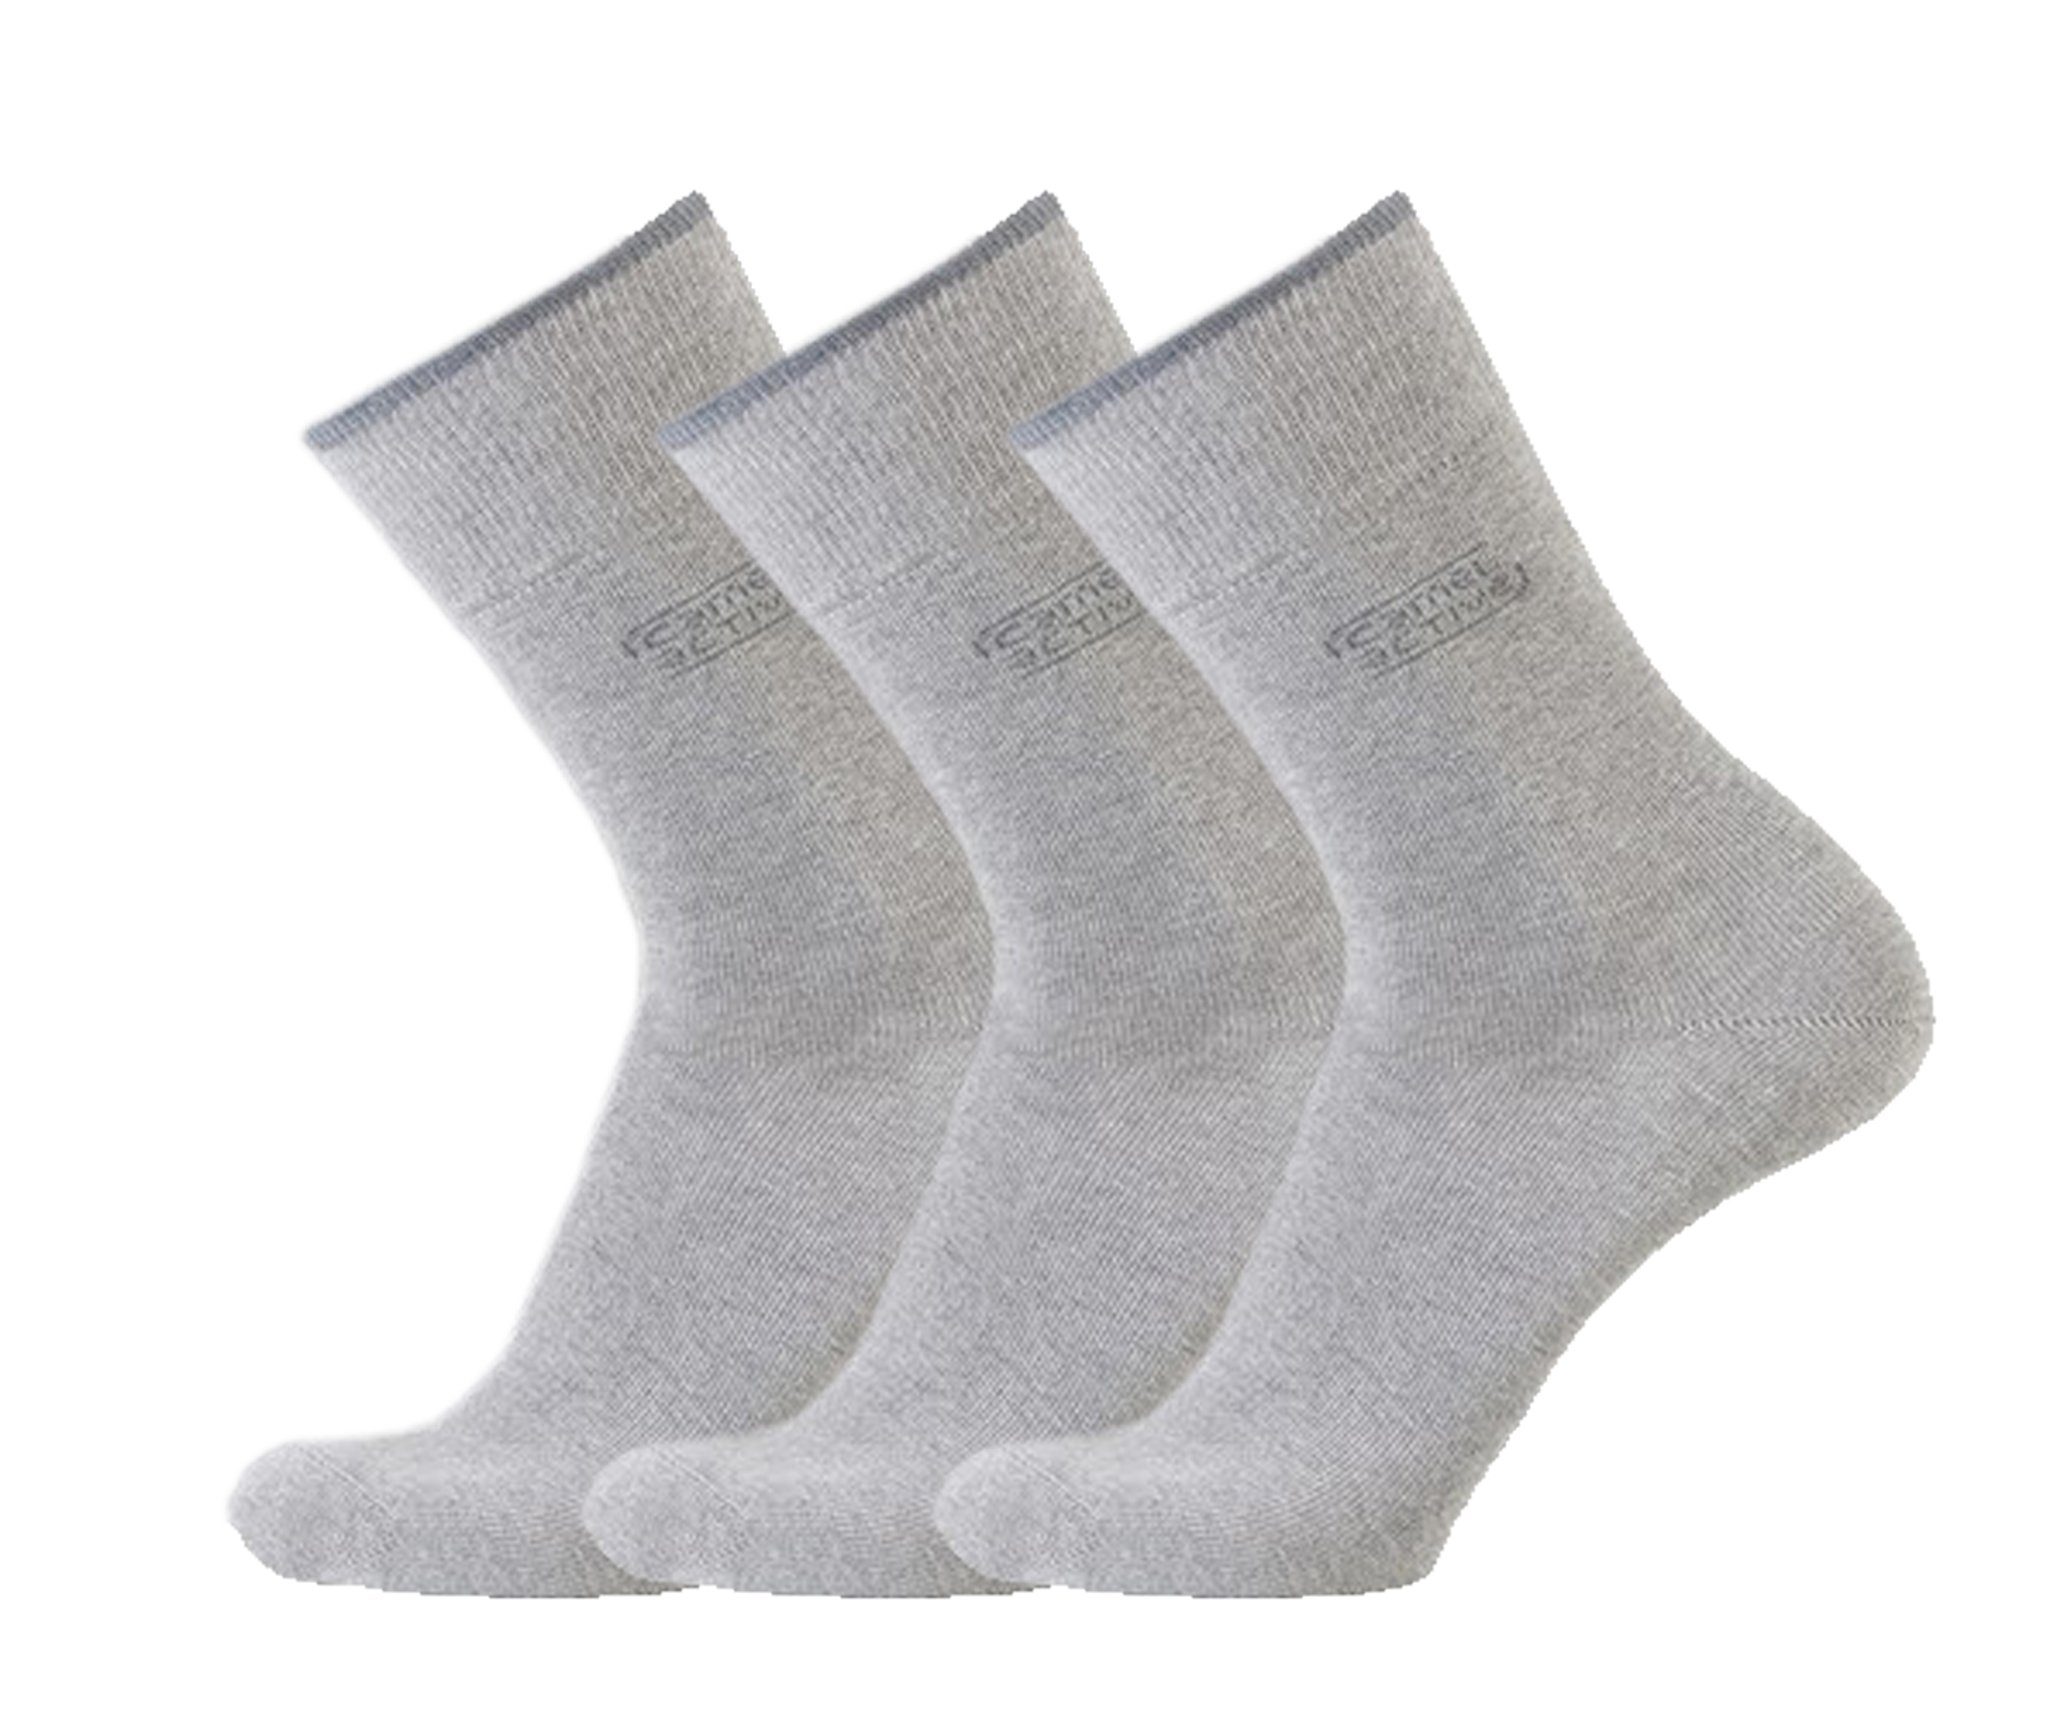 Super - Socken, Baumwollanteil Herren Zehennaht flache - active 3er camel Pack - hoher Kurzsocken Qualität Basic Socken,